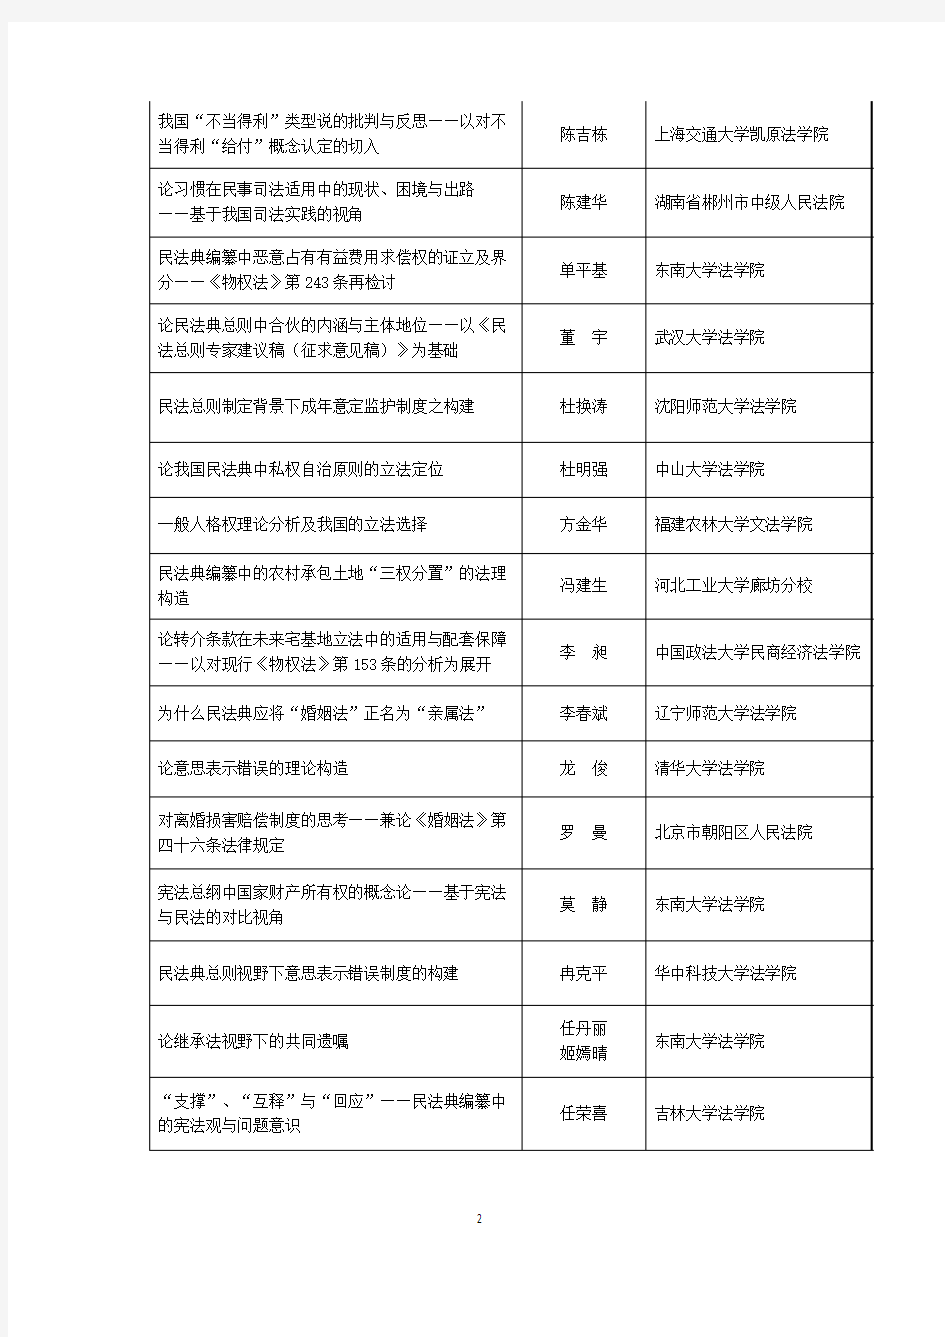 第十一届中国法学家论坛征文拟获奖论文名单